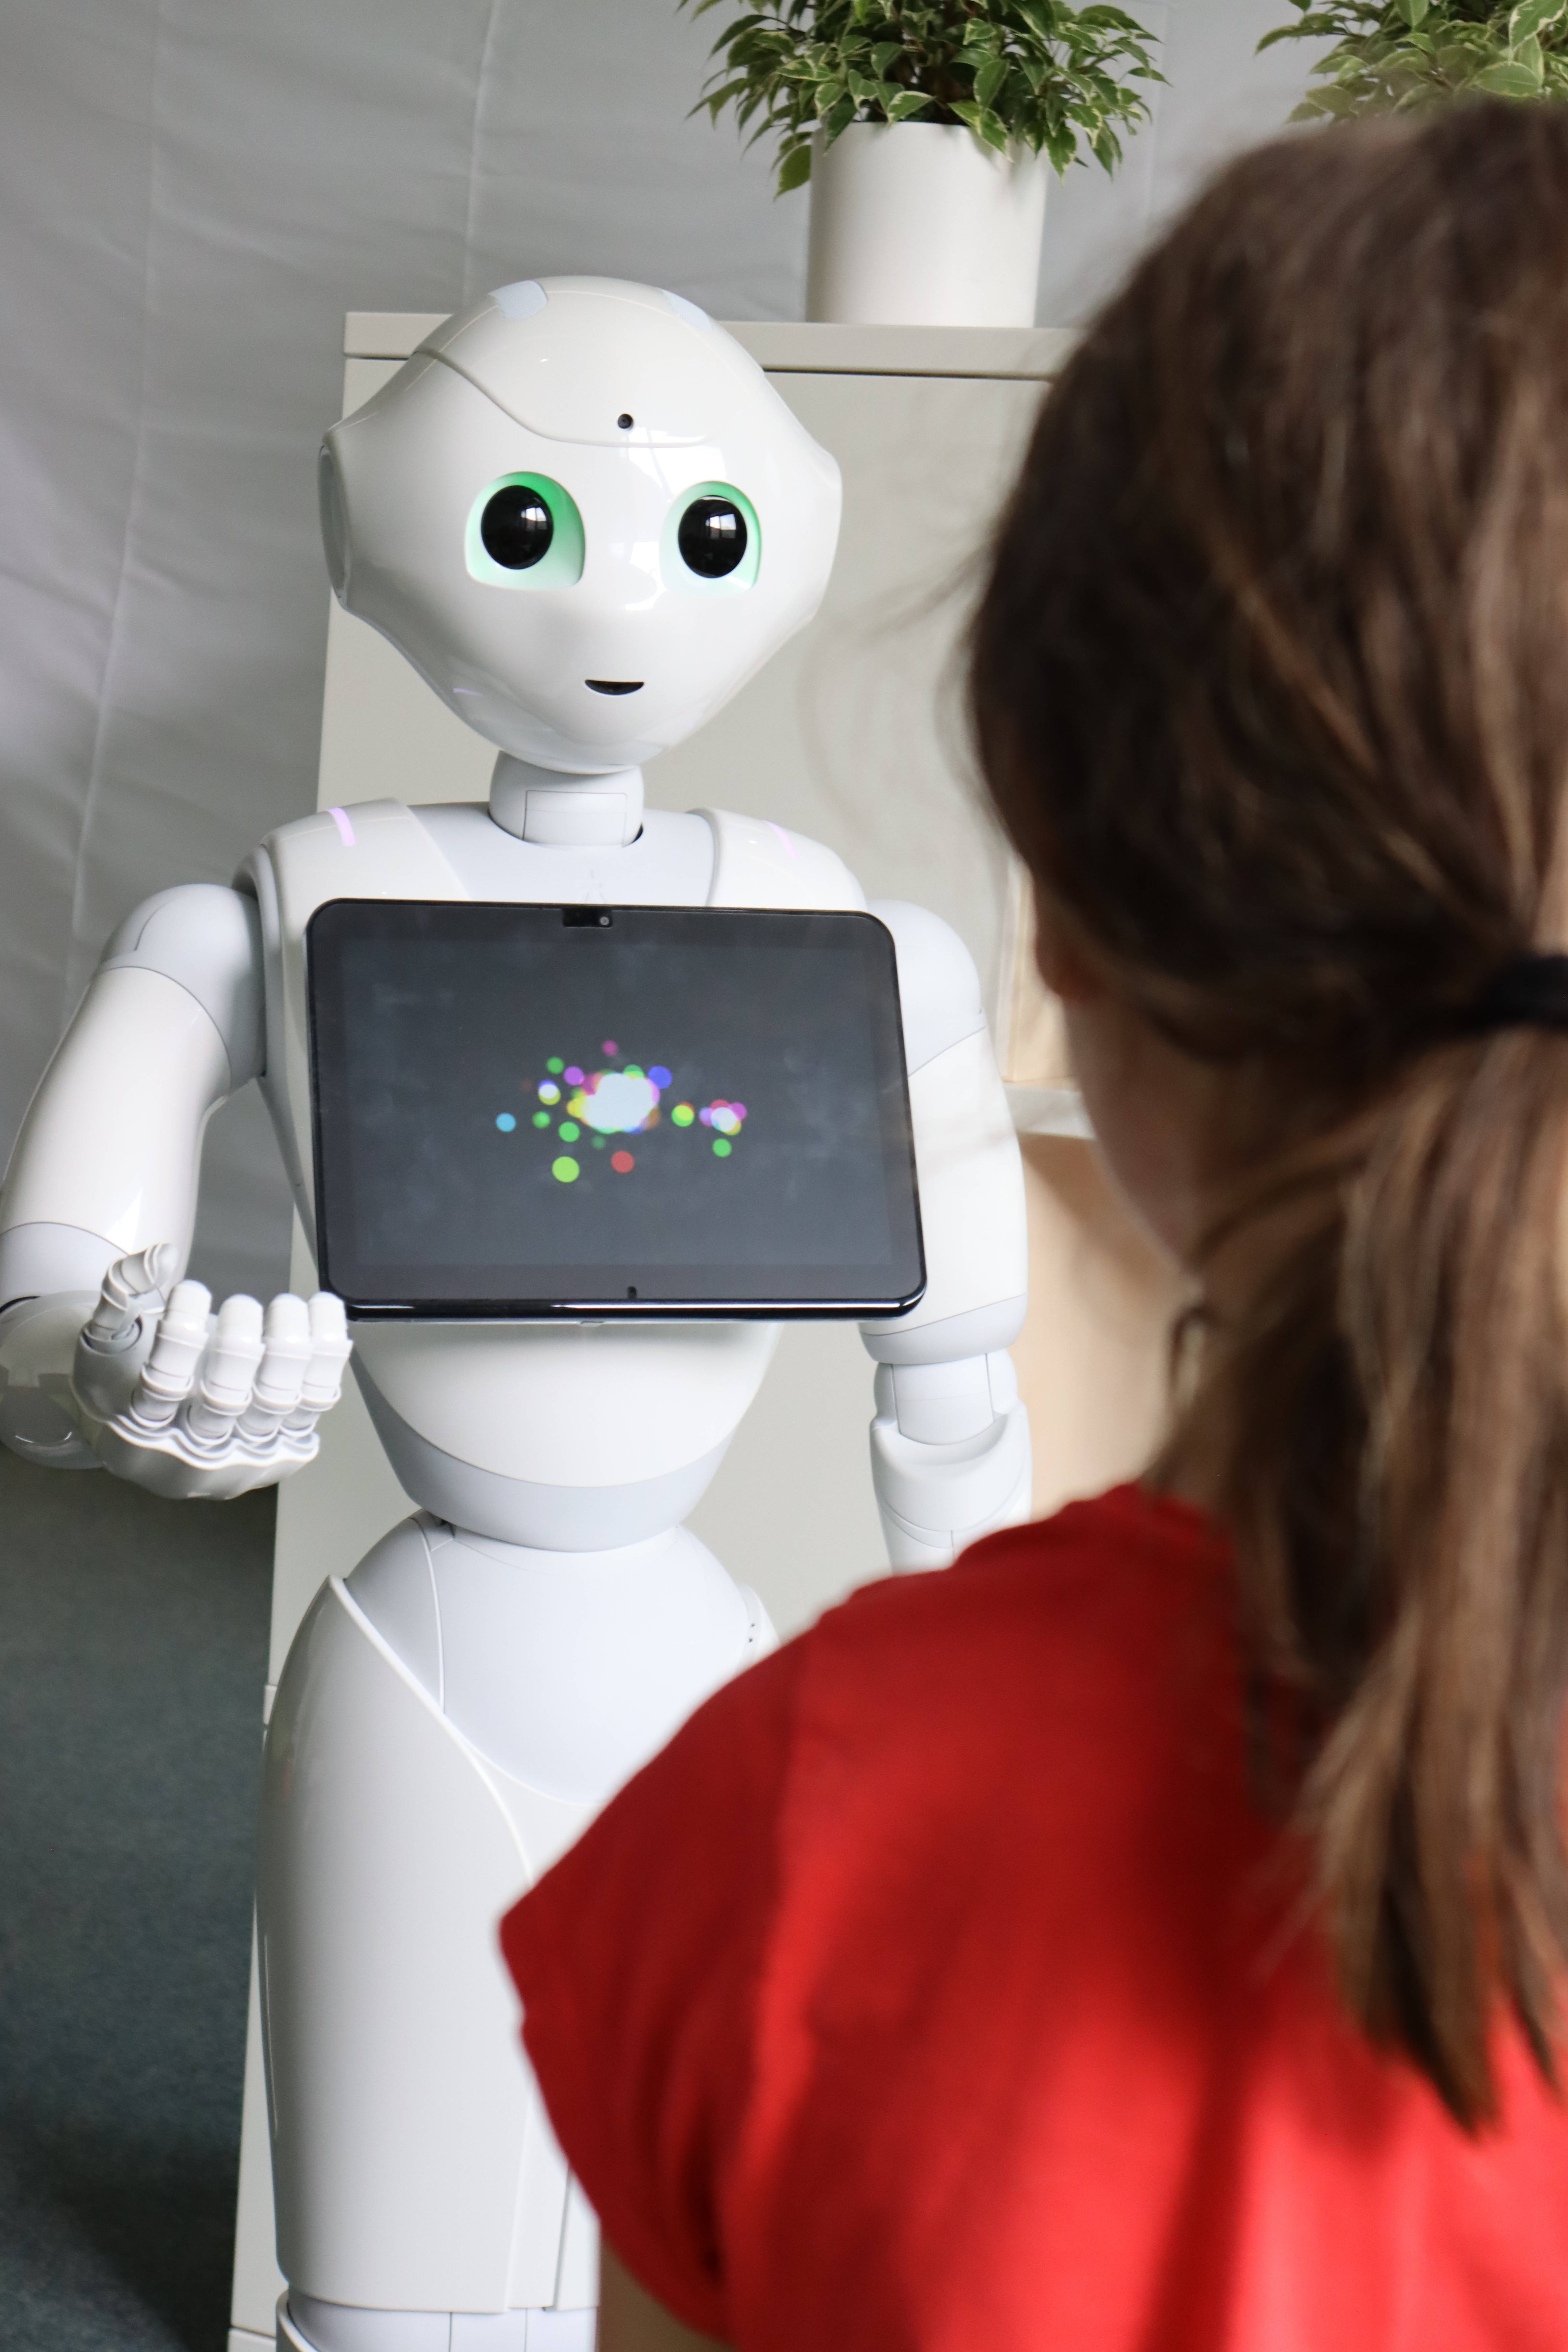 Roboter Pepper interagiert mit Mensch